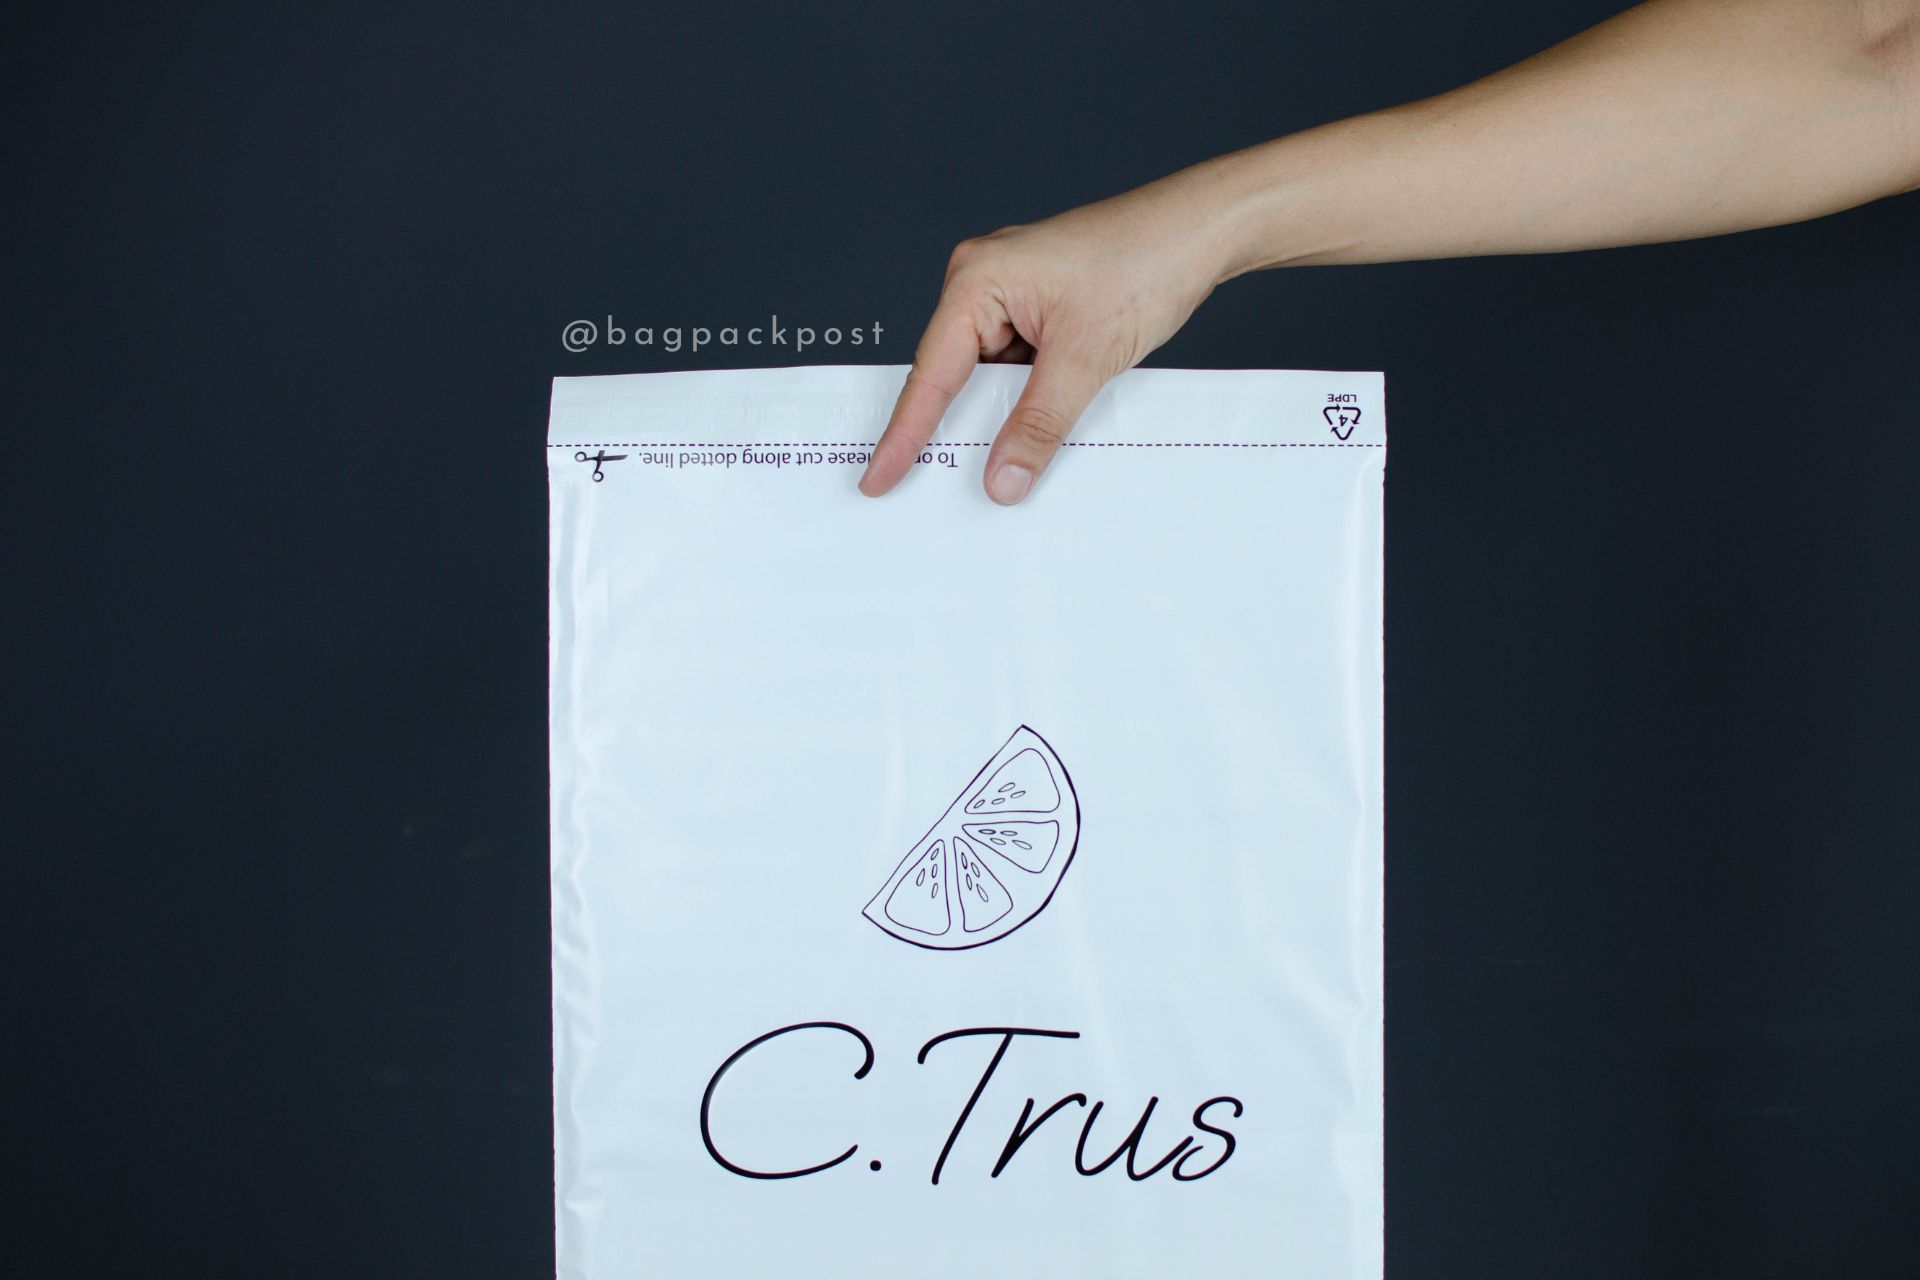 ผลิตถุงไปรษณีย์ ถุงพัสดุ ซองไปรษณีย์พิมพ์ลาย C.Trus ซองไปรษณีย์สีขาว ถุงไปรษณีย์พิมพ์ลาย 2 BagPackPost